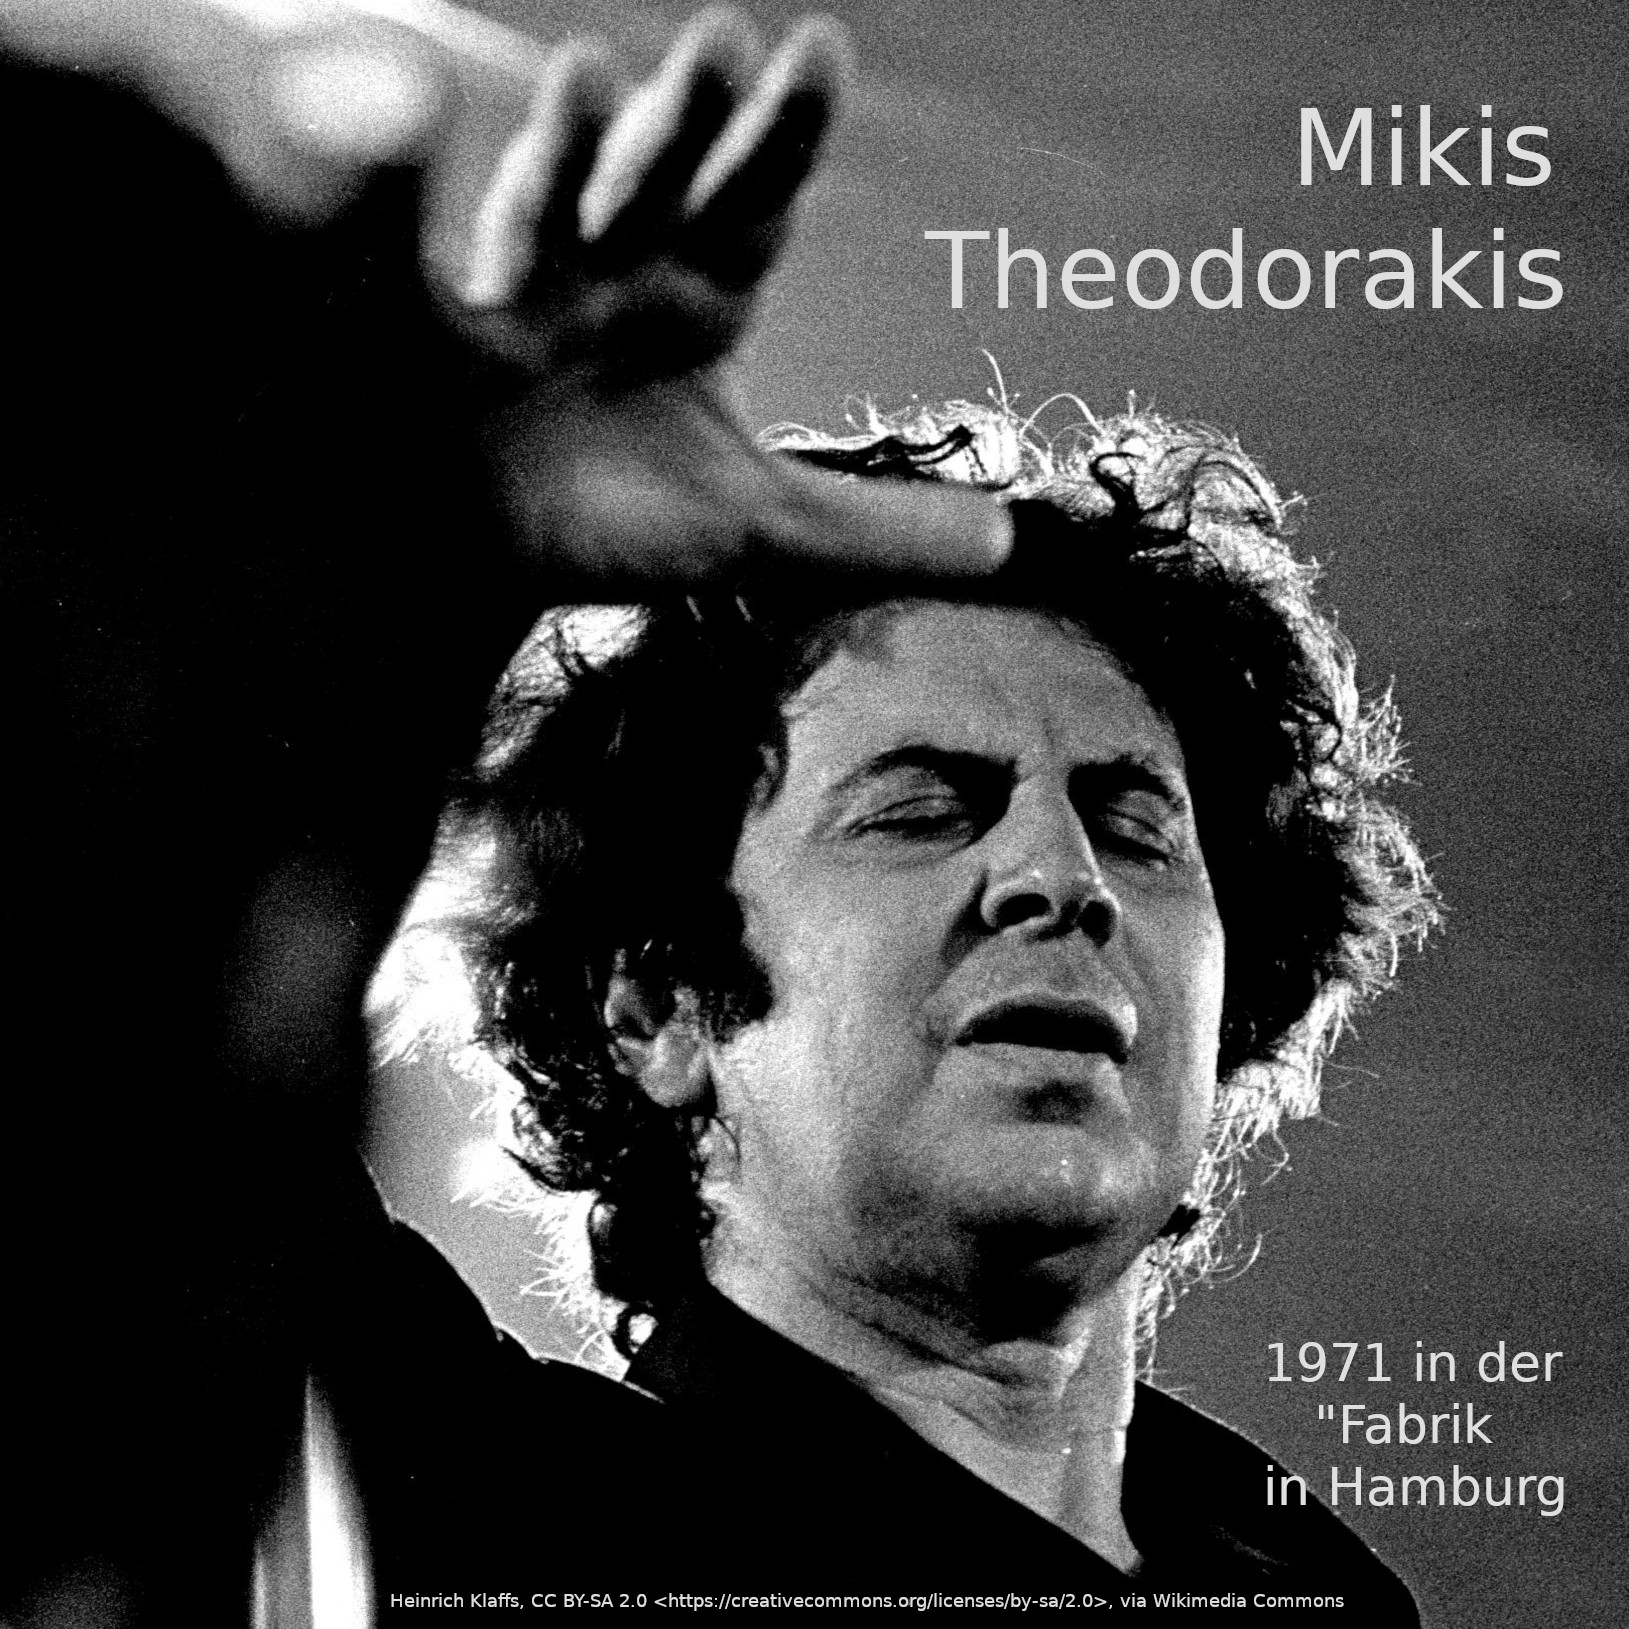 Mikis Theodorakis Fabrik HH 1971